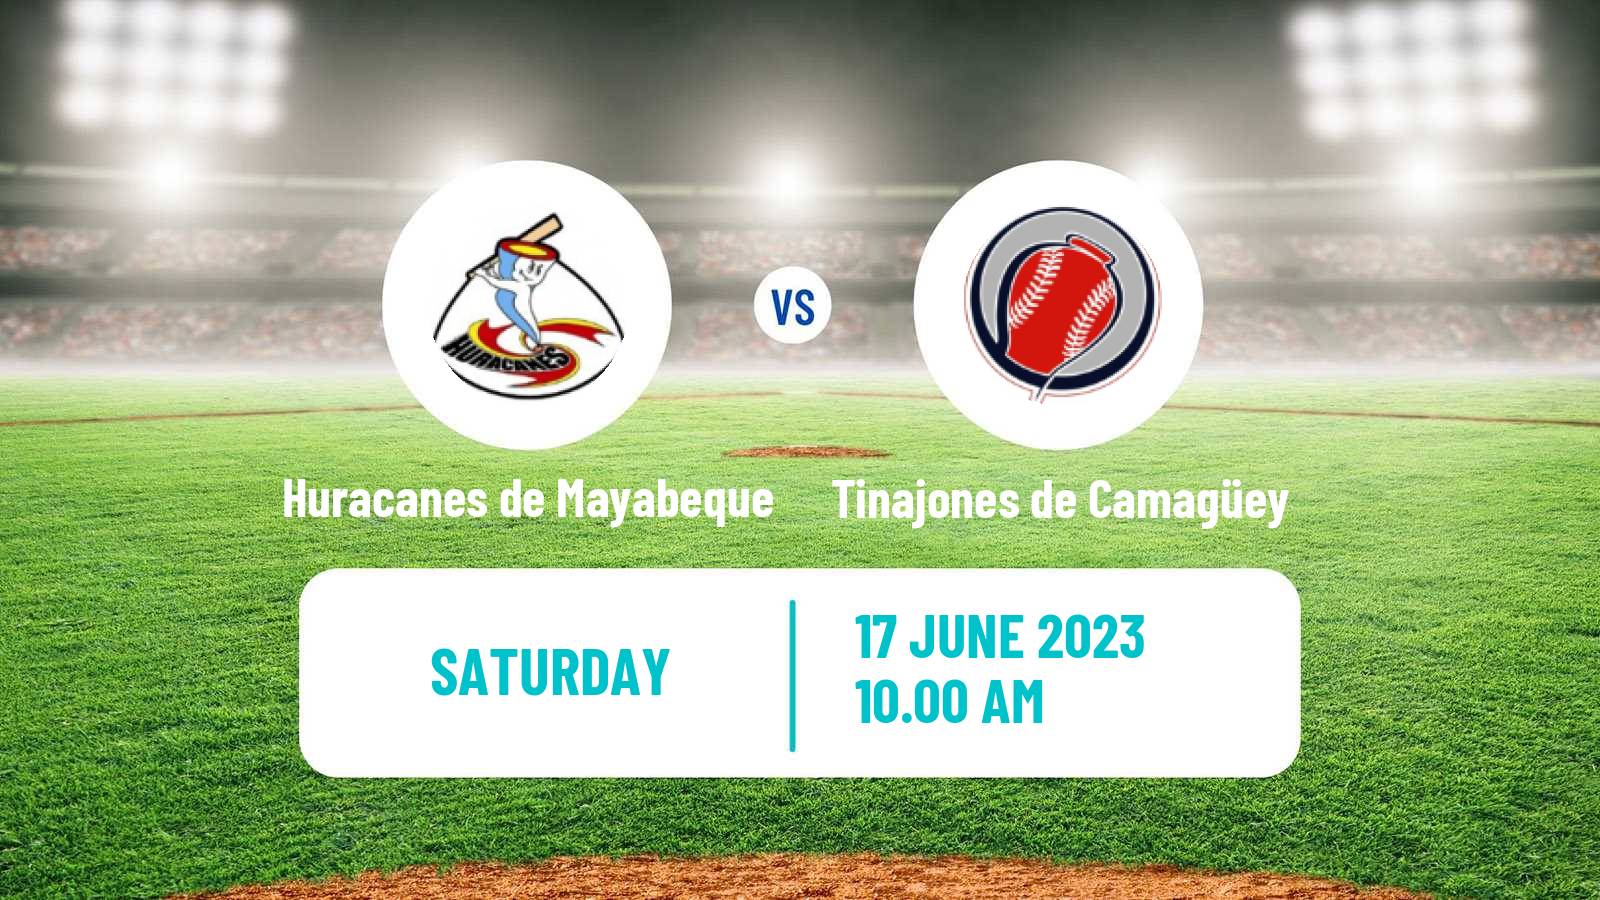 Baseball Cuba Serie Nacional Baseball Huracanes de Mayabeque - Tinajones de Camagüey